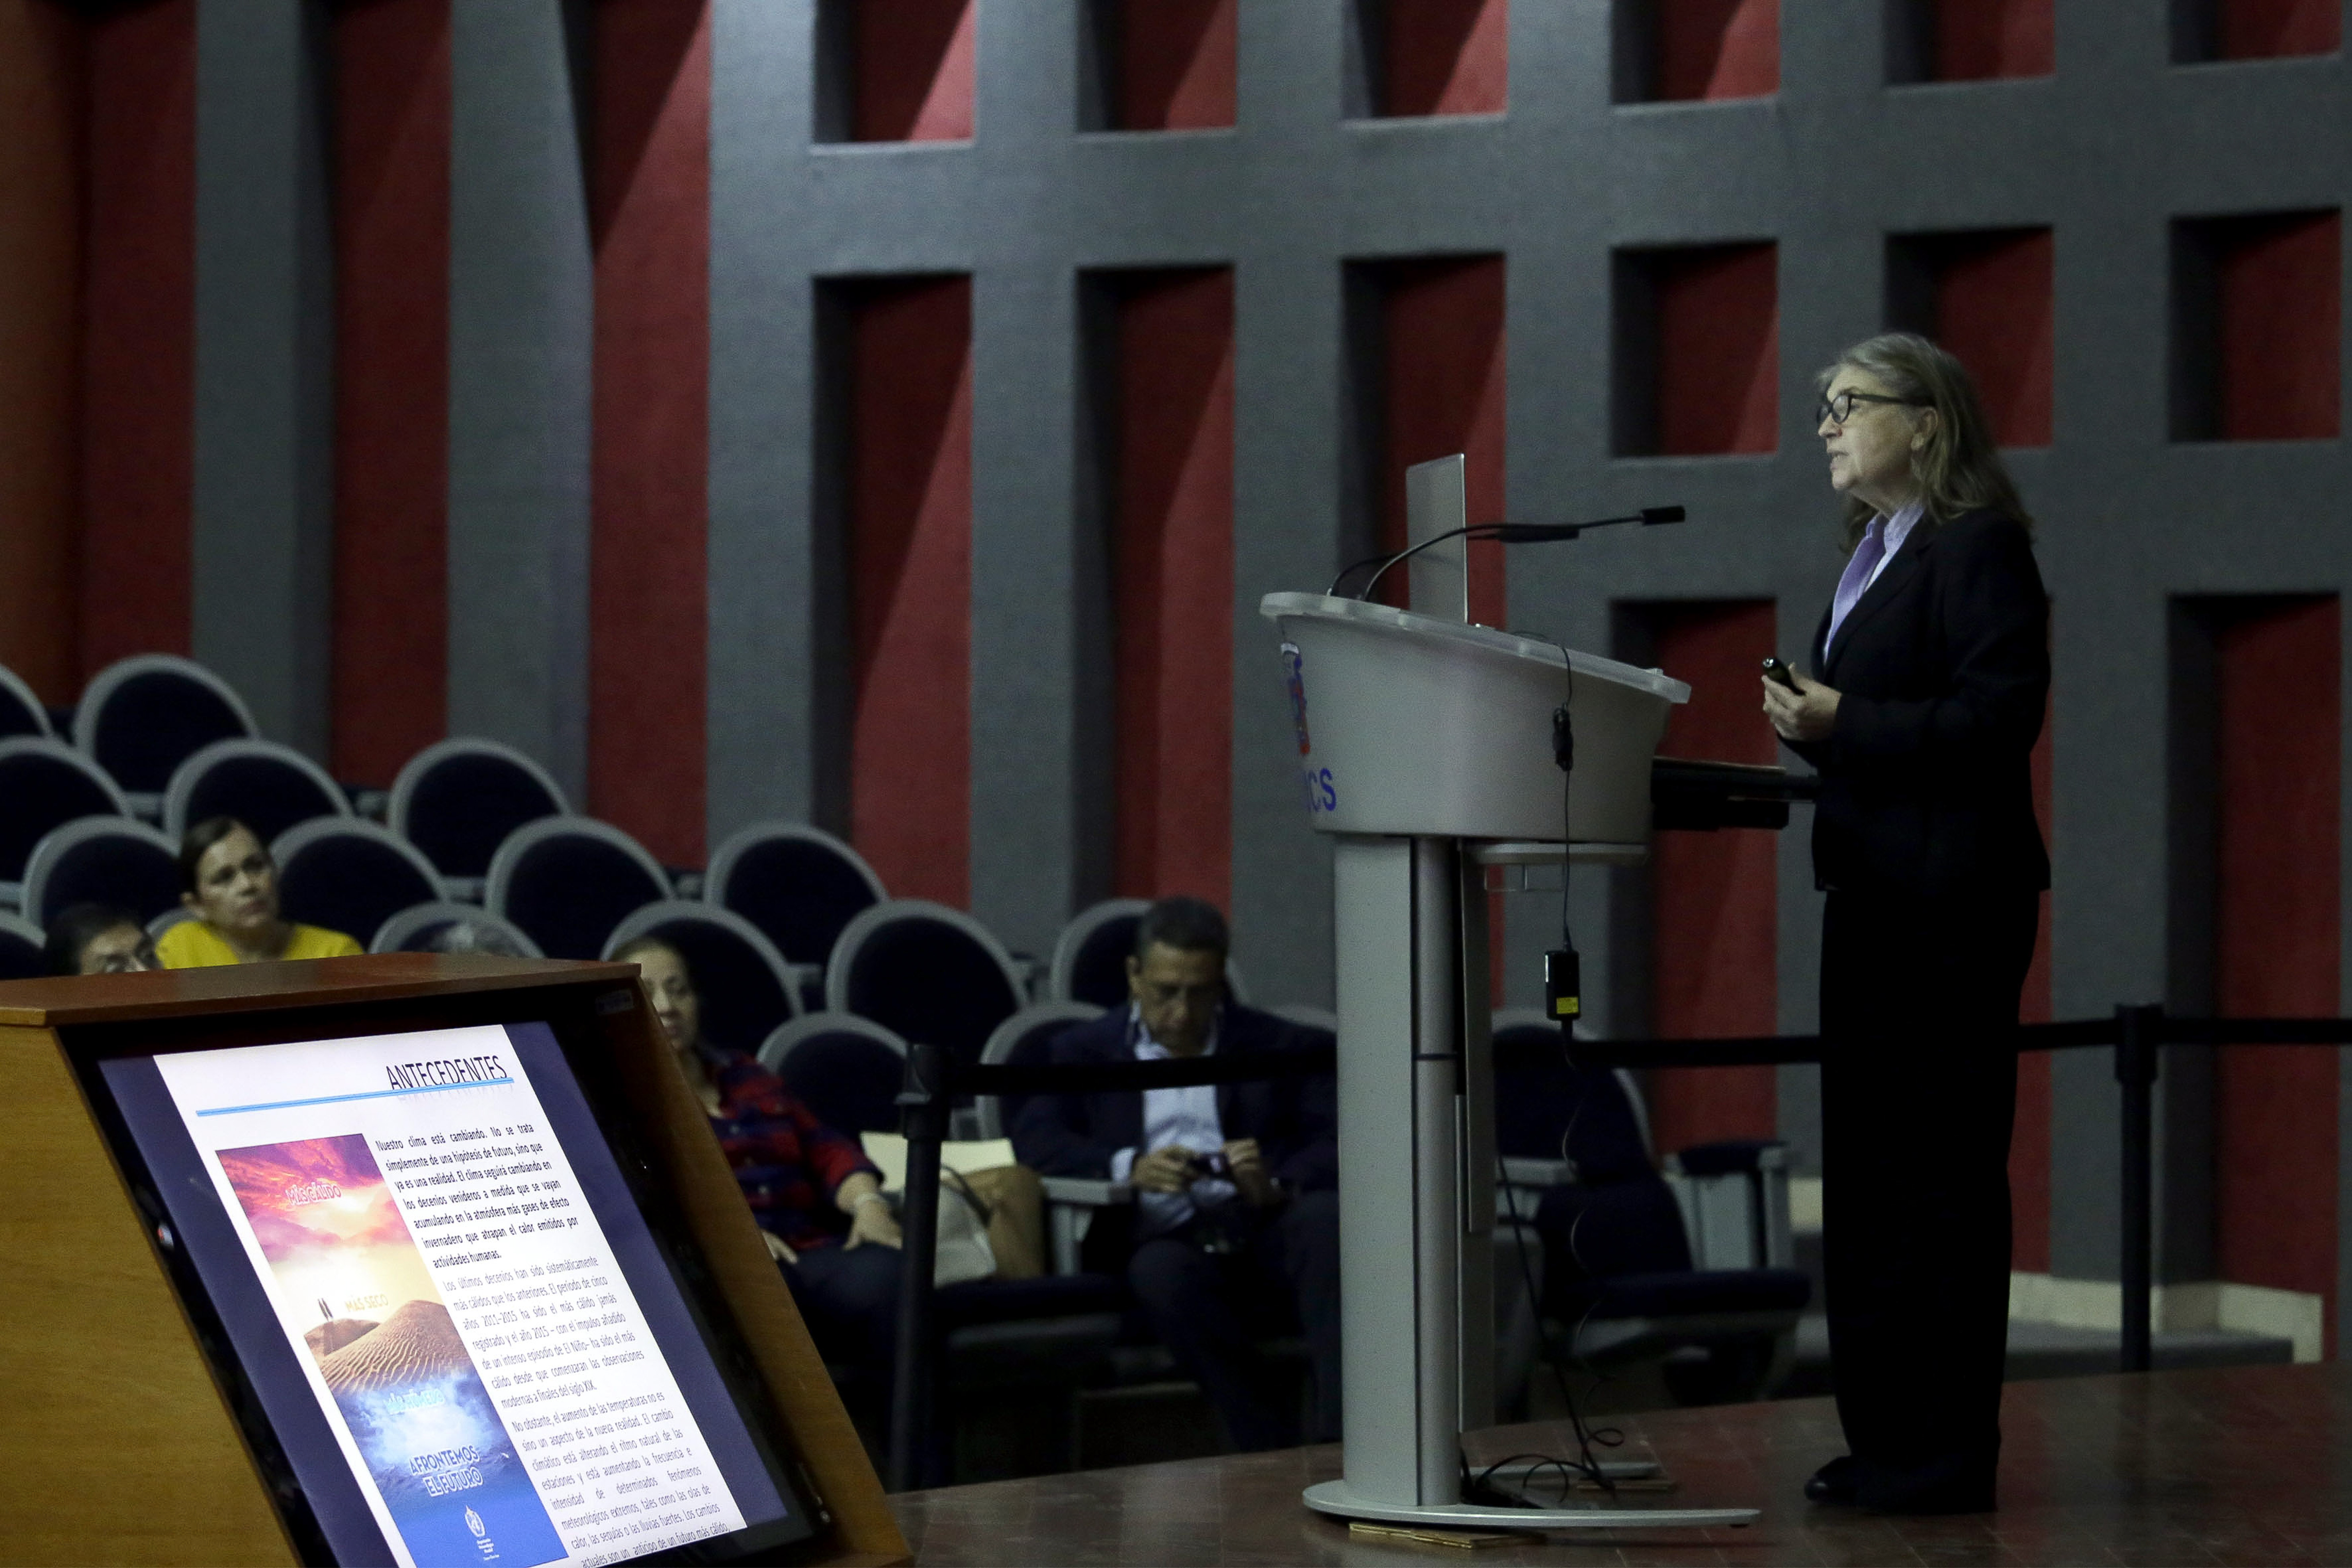 A la vista el monitor con la presentación de la Dra. Davydova y en segundo plano la ponente durante su disertación